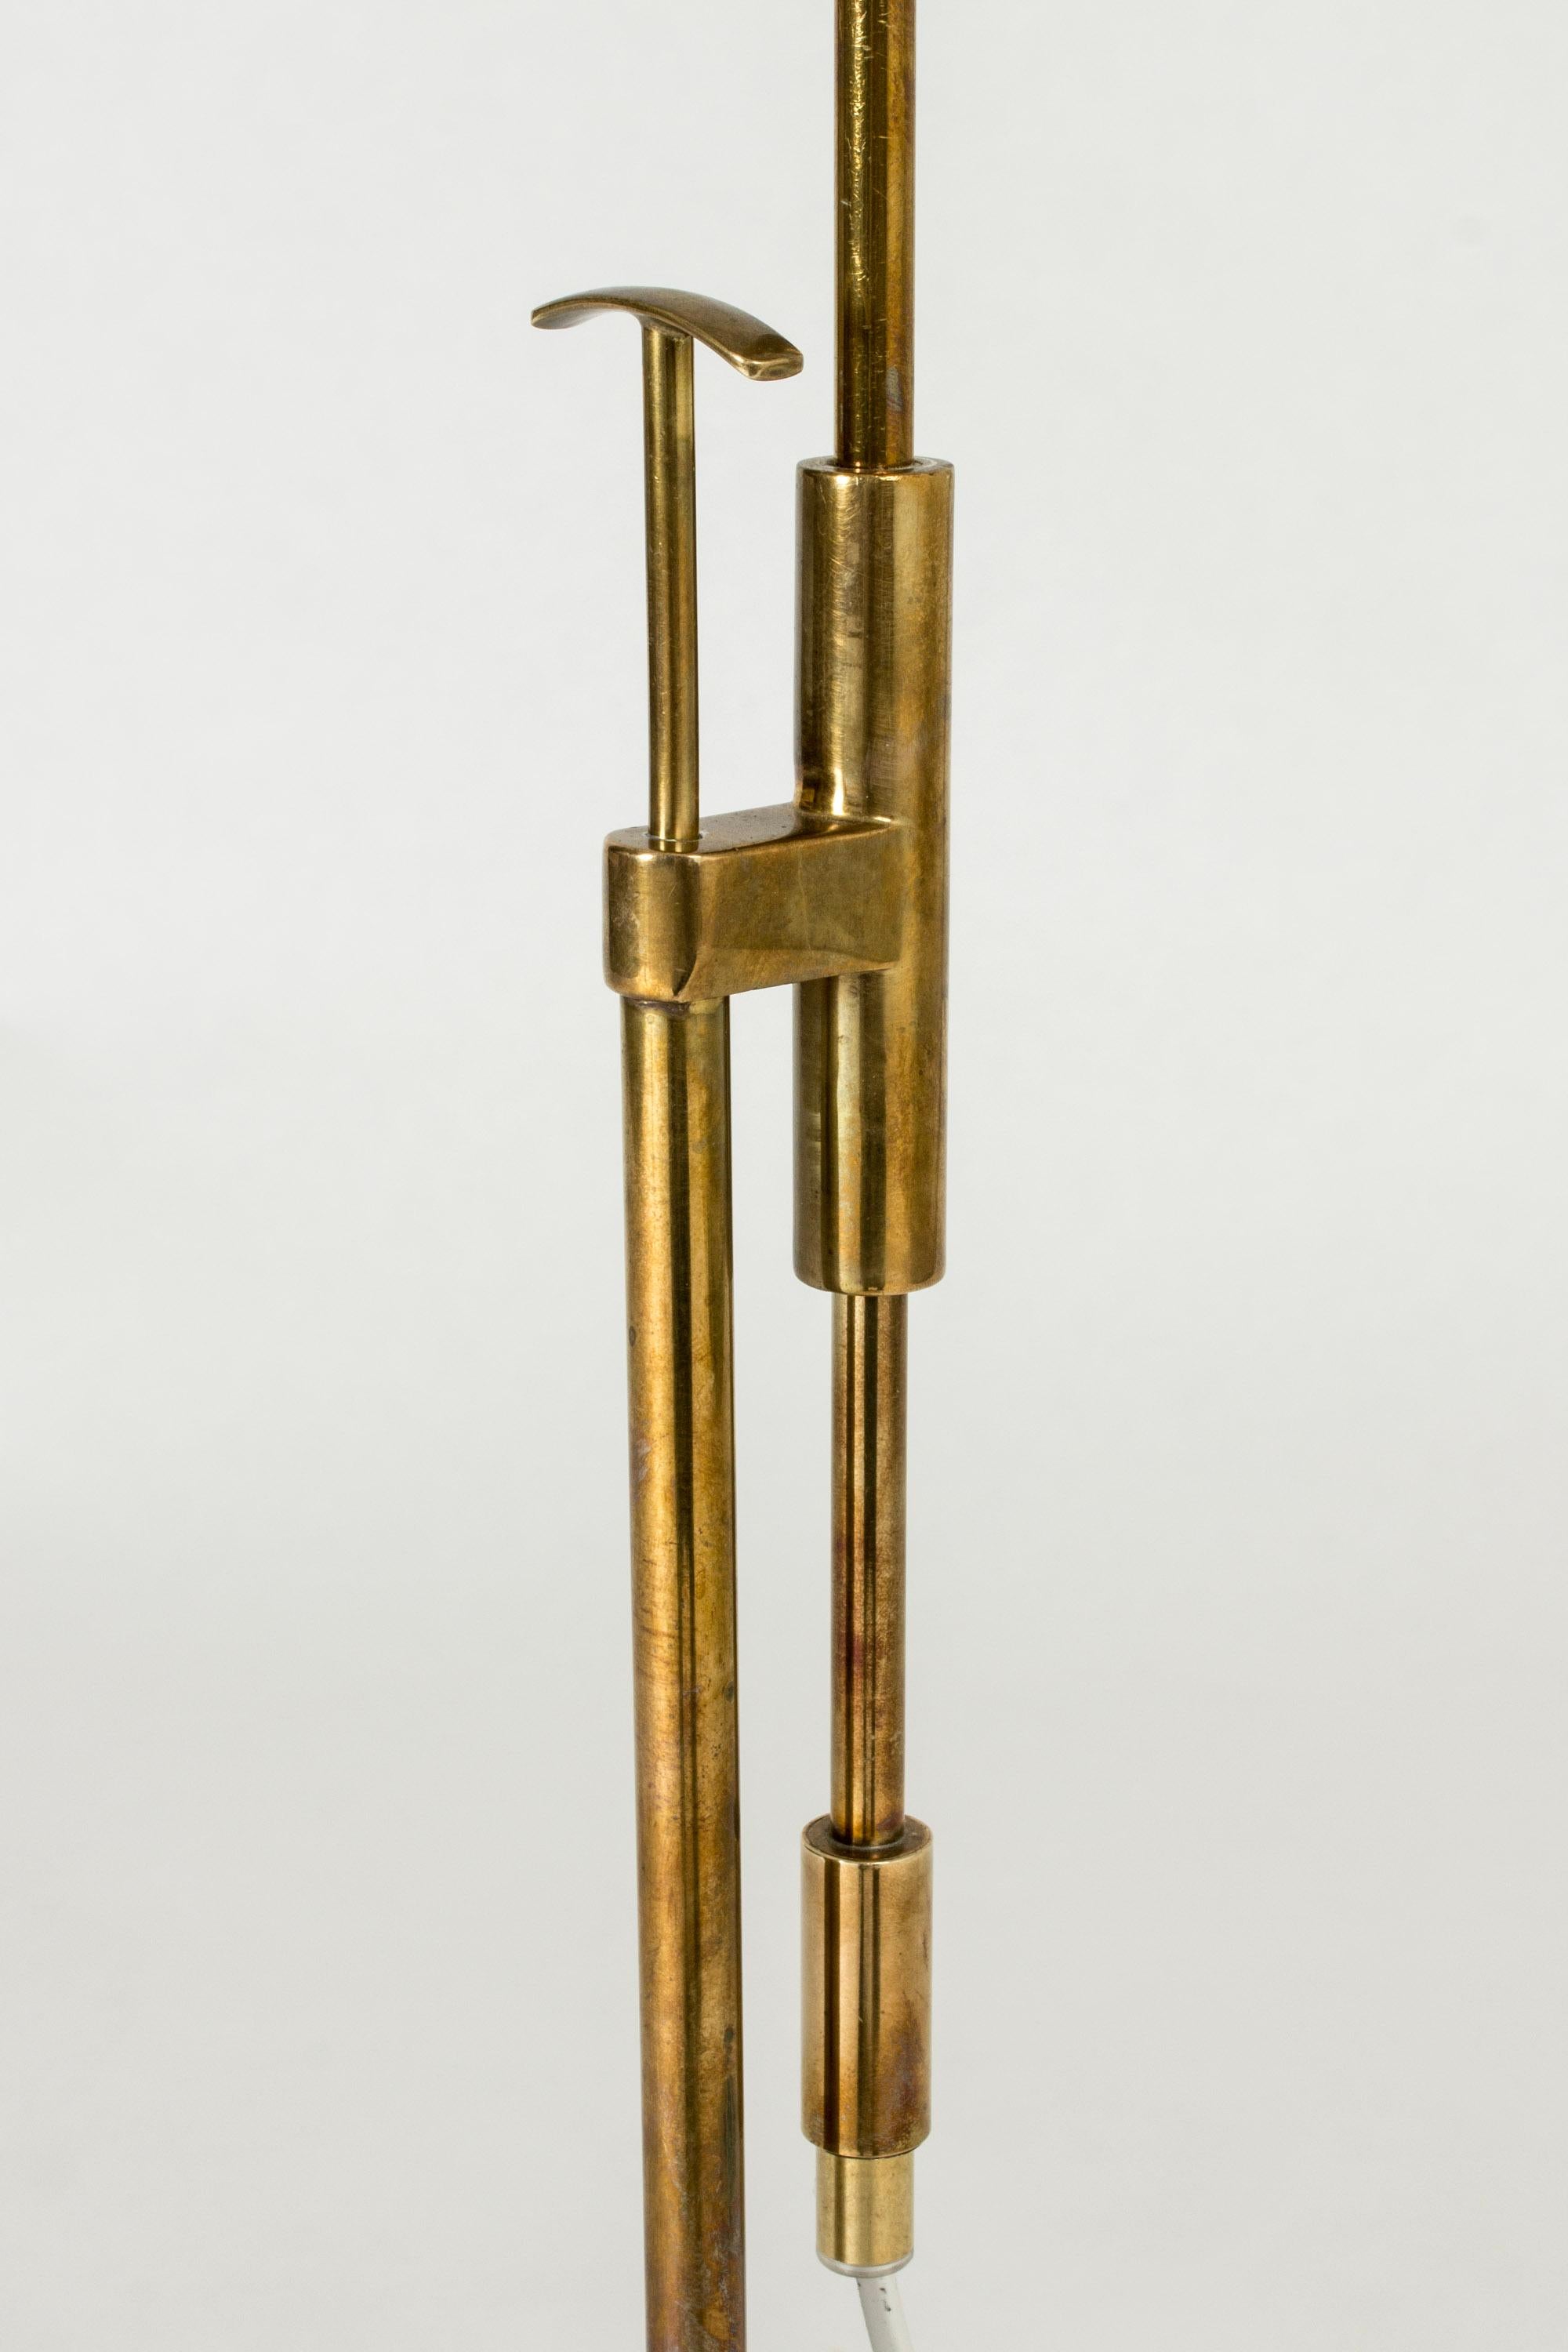 Brass Scandinavian Modern Floor Lamp from Falkenbergs Belysning, 1950s